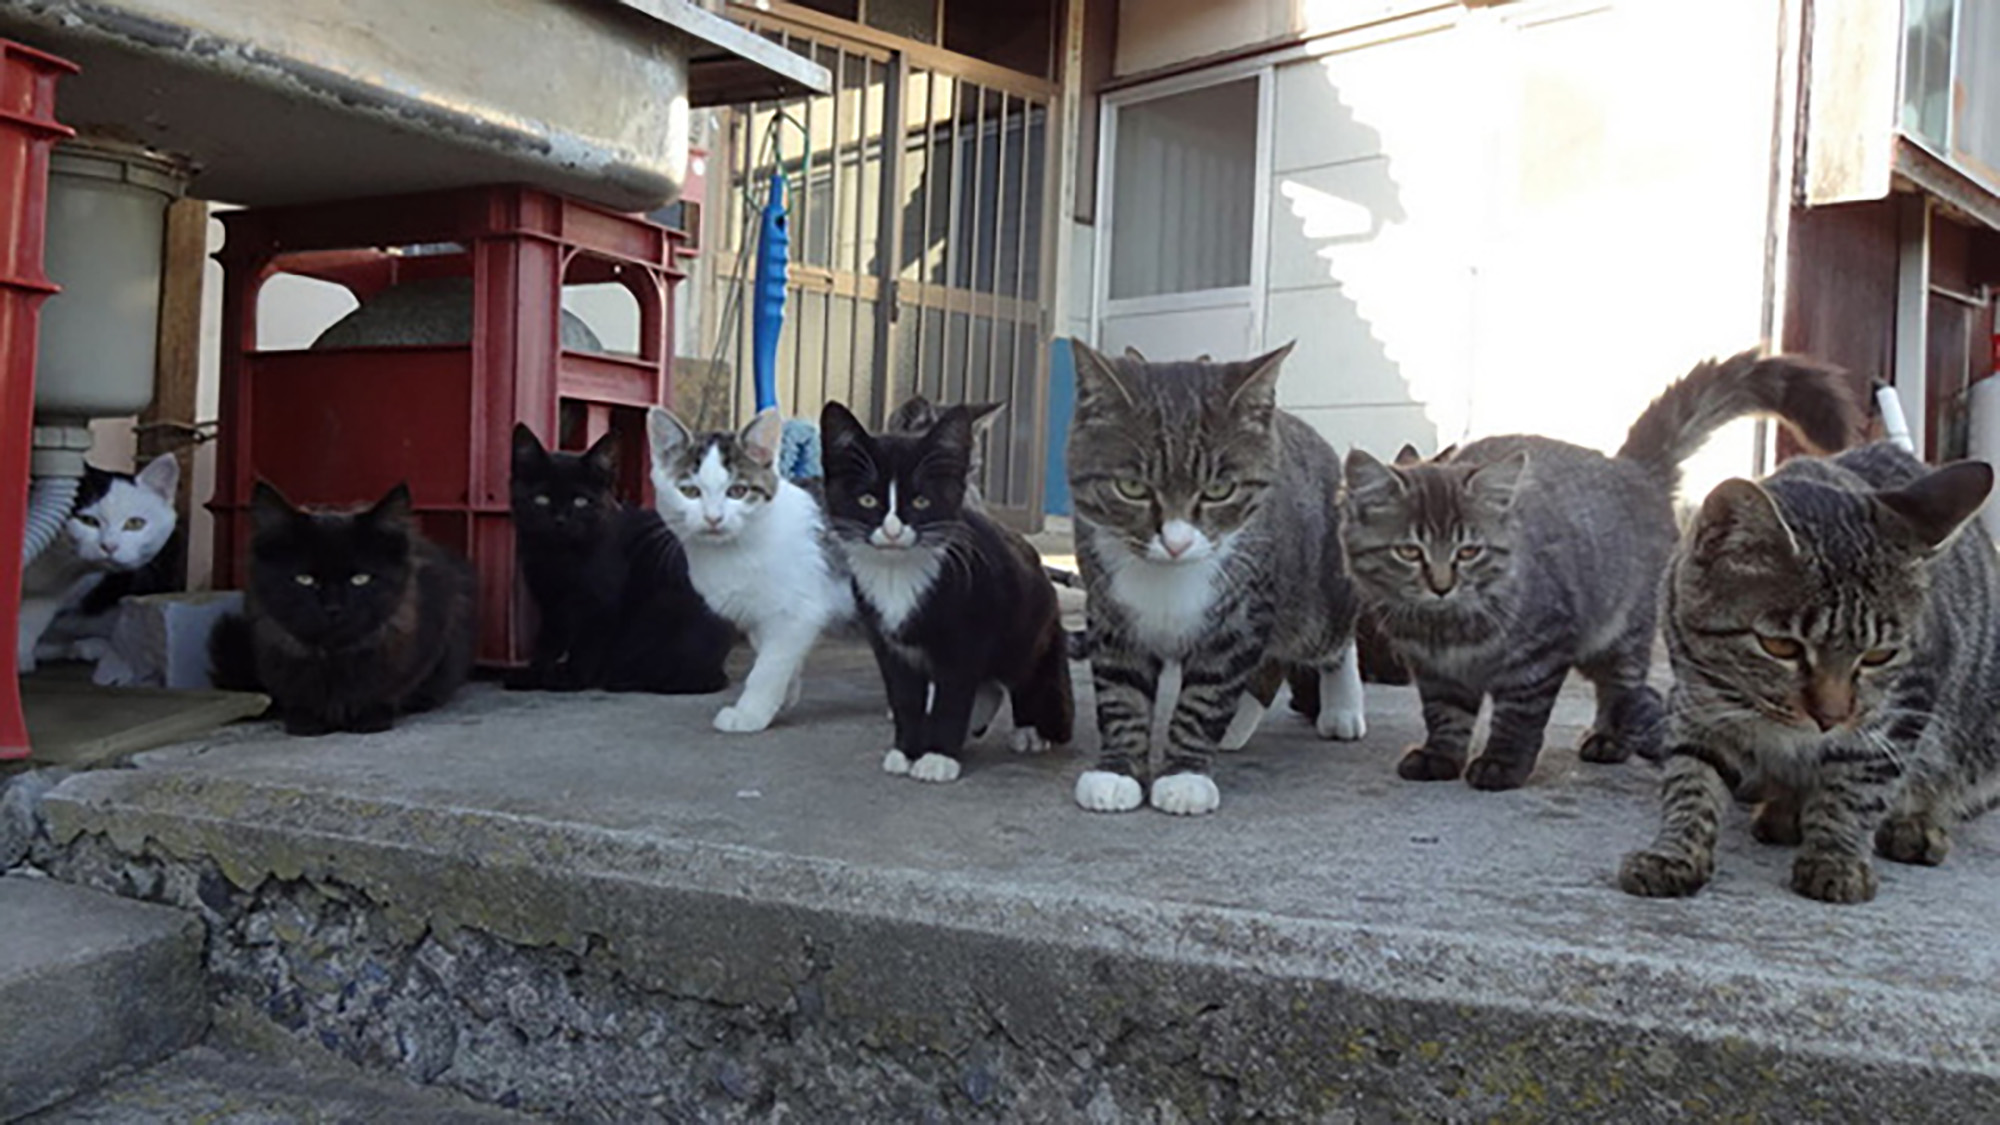 Beautiful Photos of Japan’s Purrfect Cat Islands